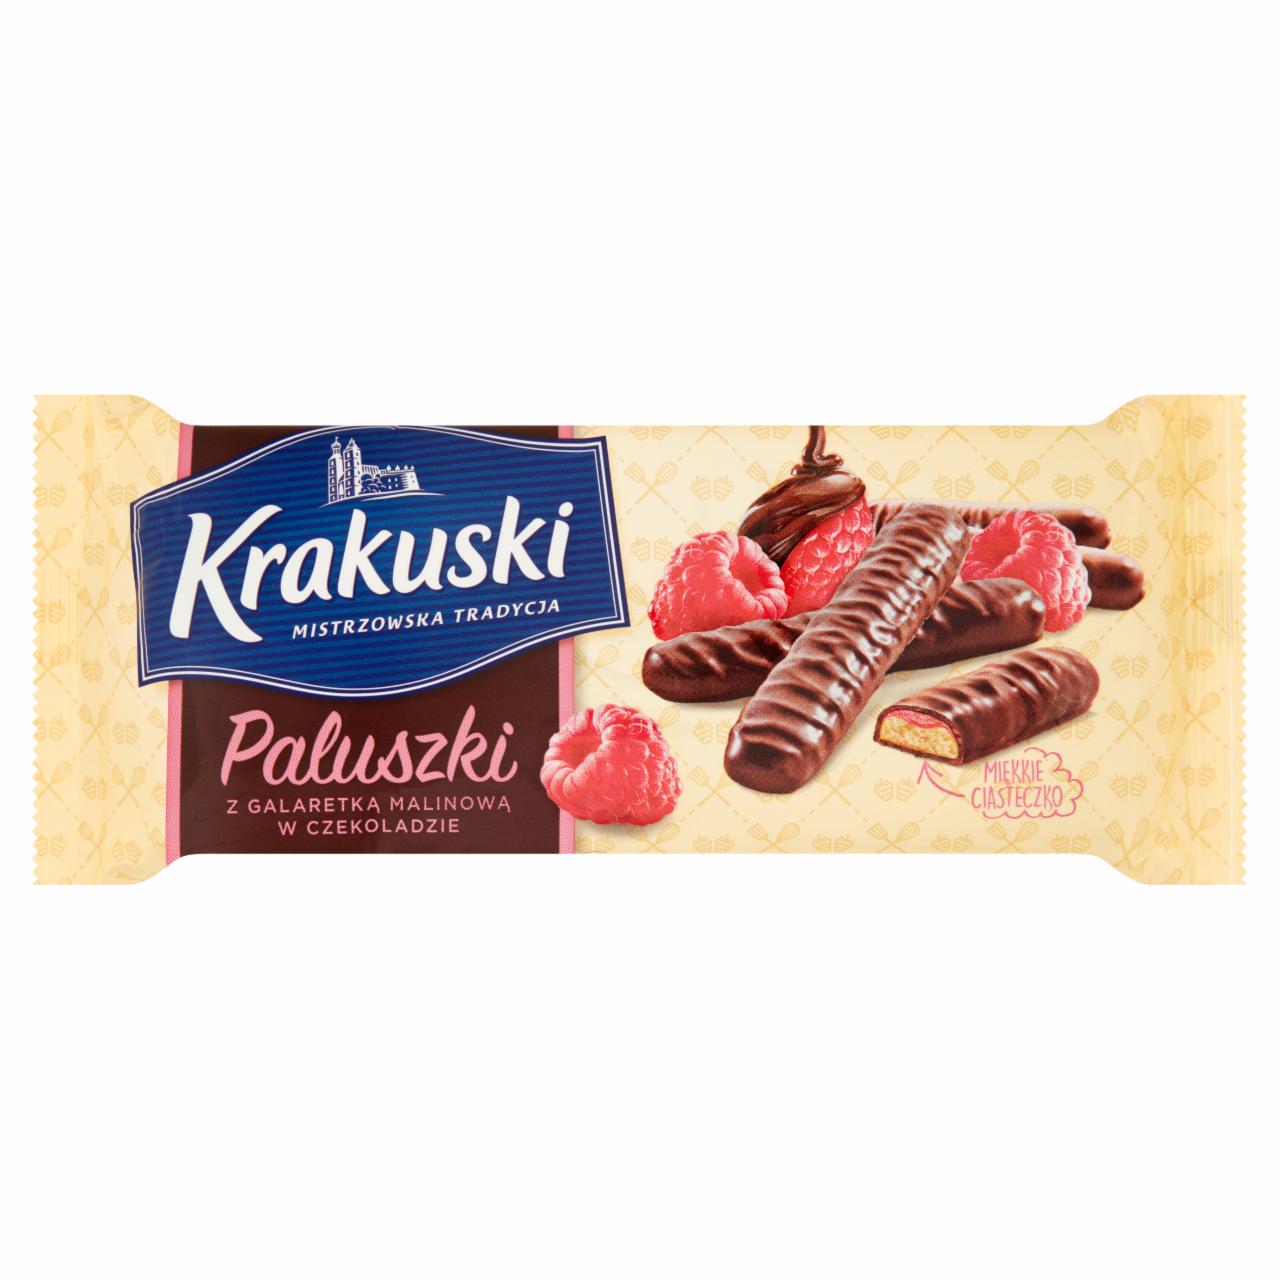 Fotografie - Paluszki z galaretką malinową w czekoladzie Krakuski